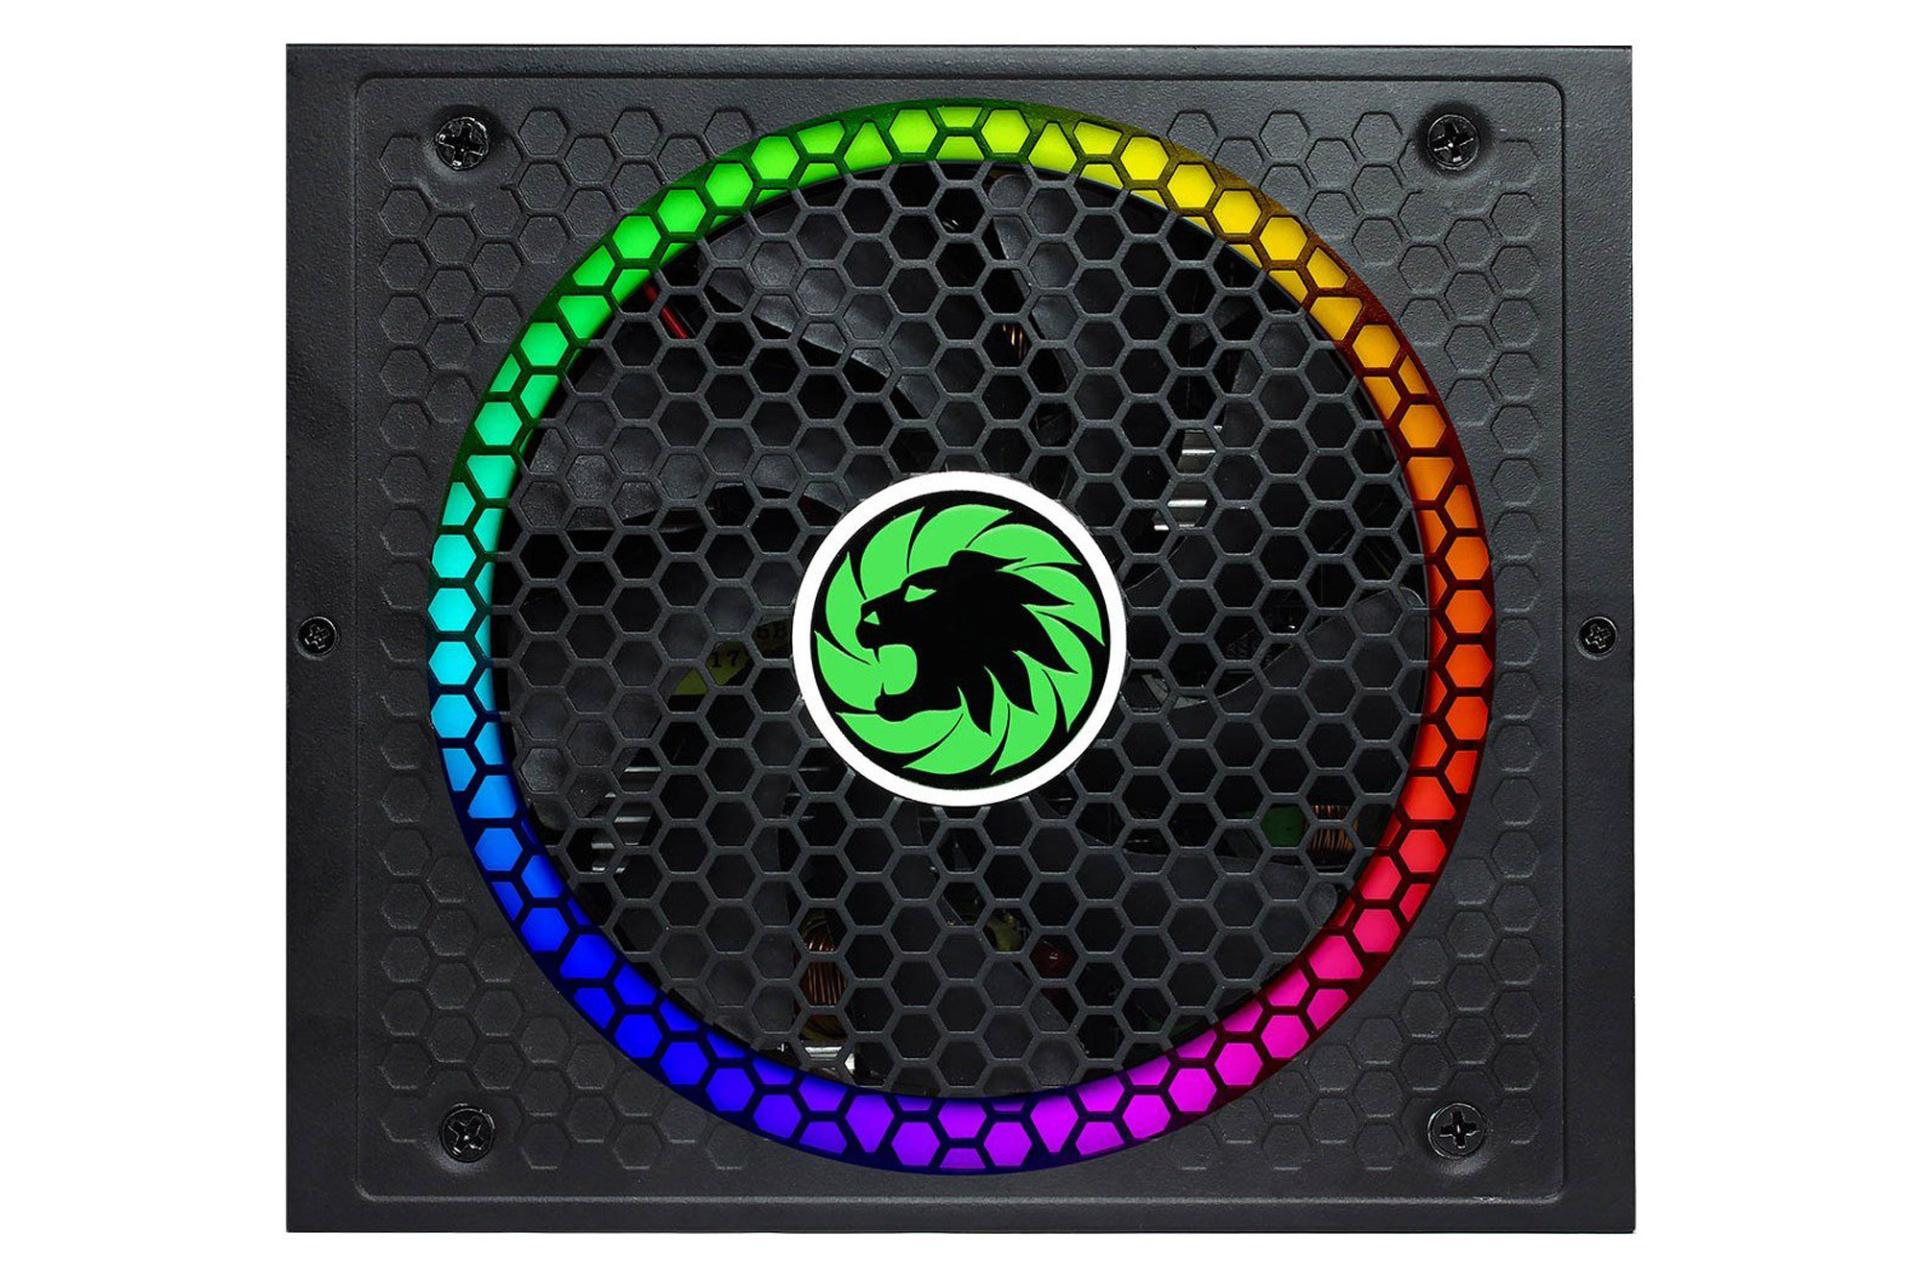 پاور کامپیوتر گیم مکس RGB850 Rainbow با توان 850 وات نمای فن